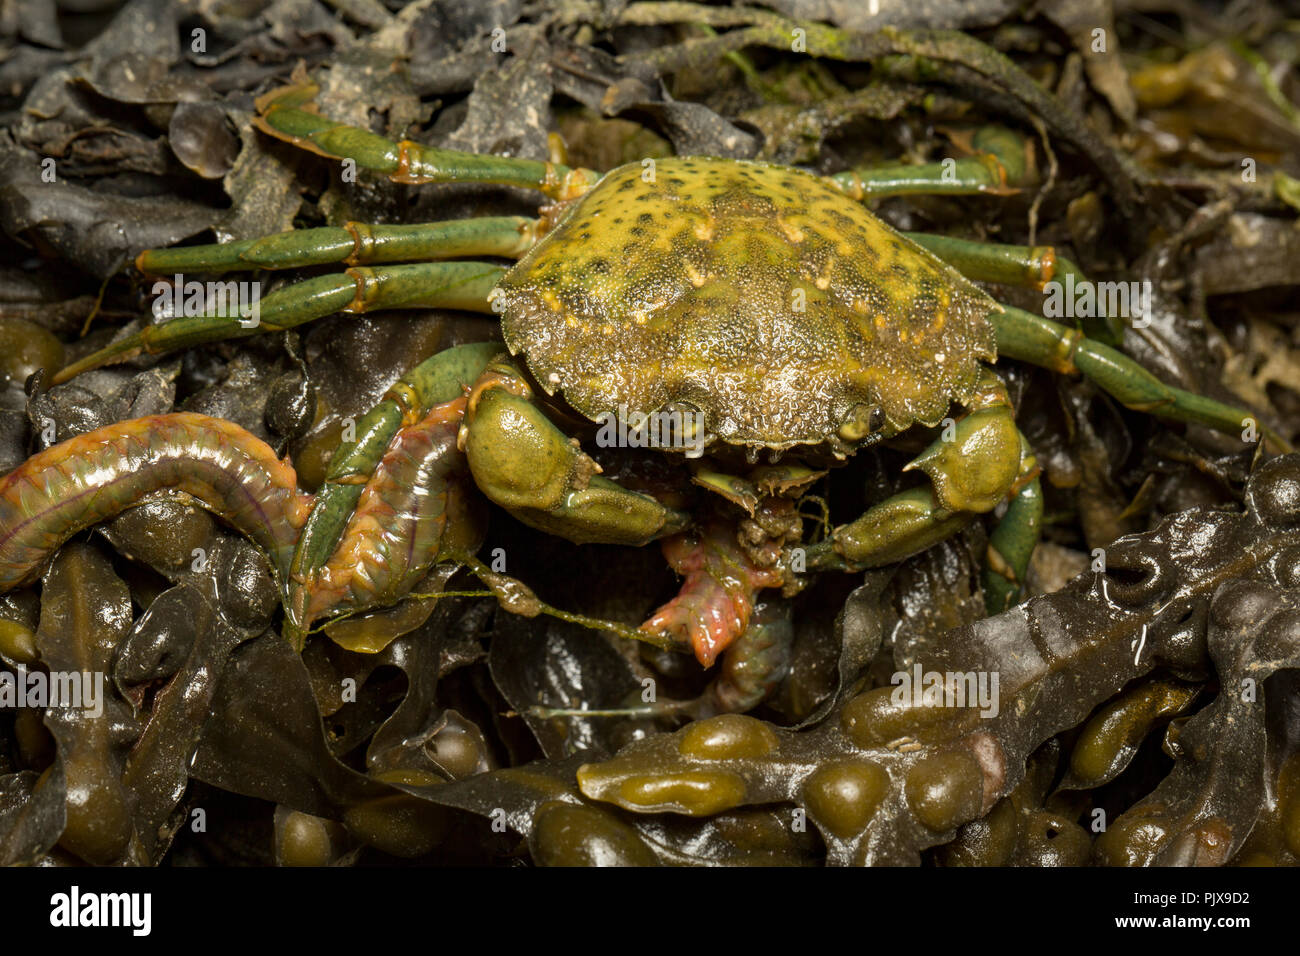 Un crabe vert, Carcinus maenas, sur les roches exposées et les algues se nourrissent d'une jetée king ragworm qu'il avait utilisé comme appât de pêche. Dorset Engla Banque D'Images